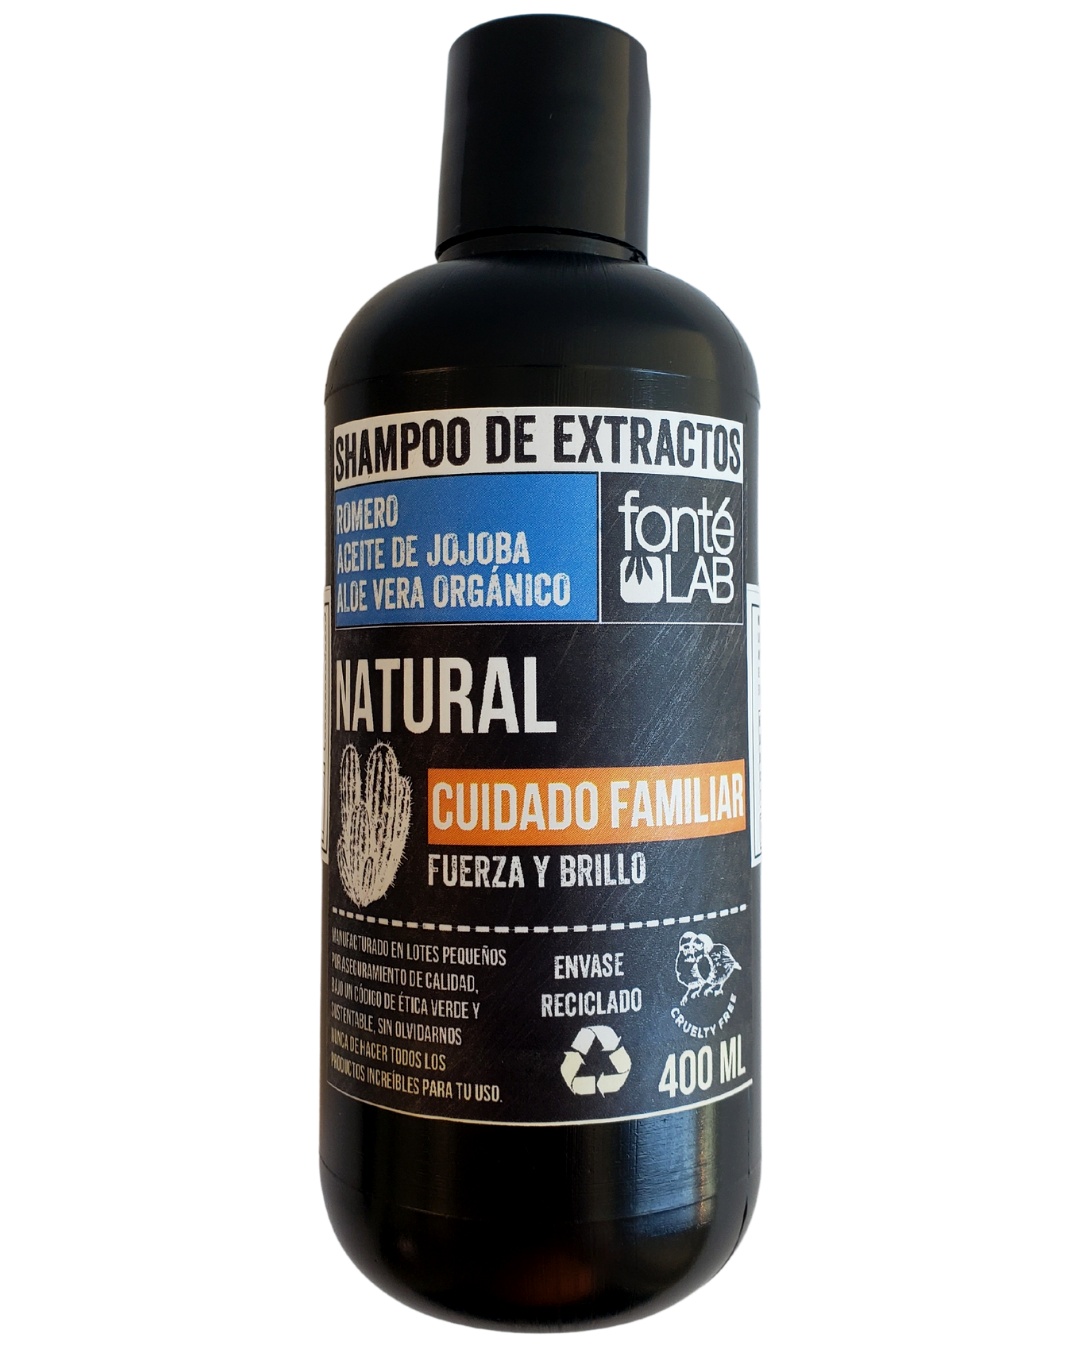 Shampoo Familiar de extractos naturales